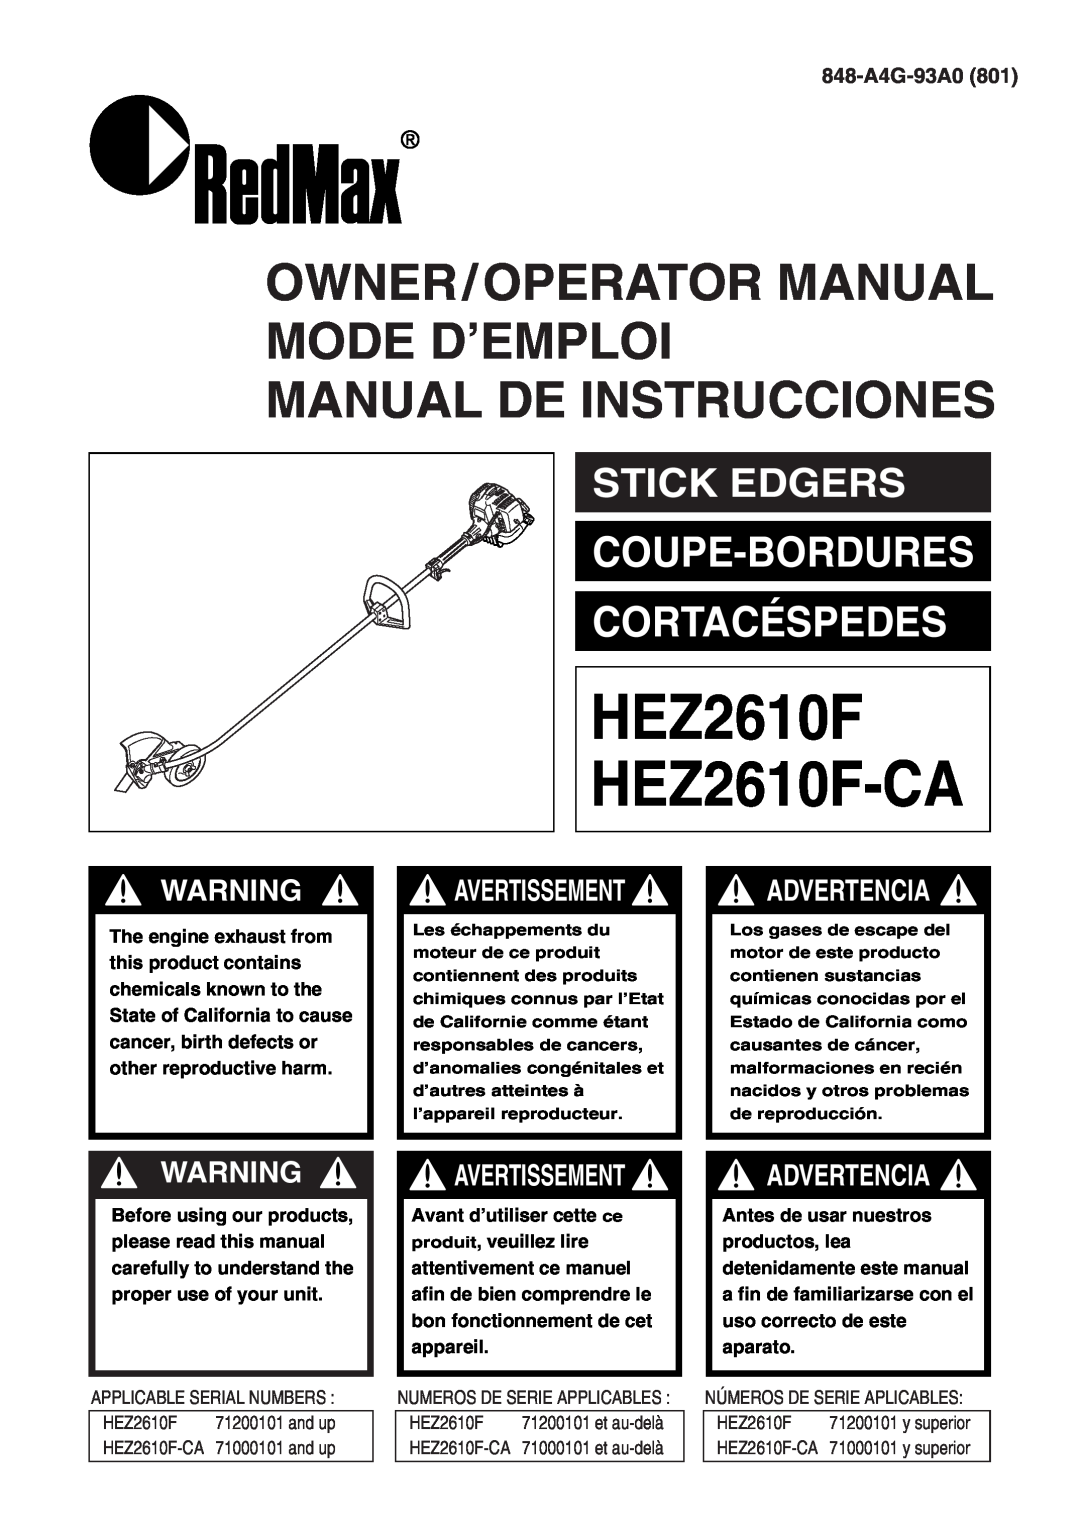 Zenoah manual Coupe-Bordures Cortacéspedes, Stick Edgers, 848-A4G-93A0, HEZ2610F HEZ2610F-CA, Advertencia 